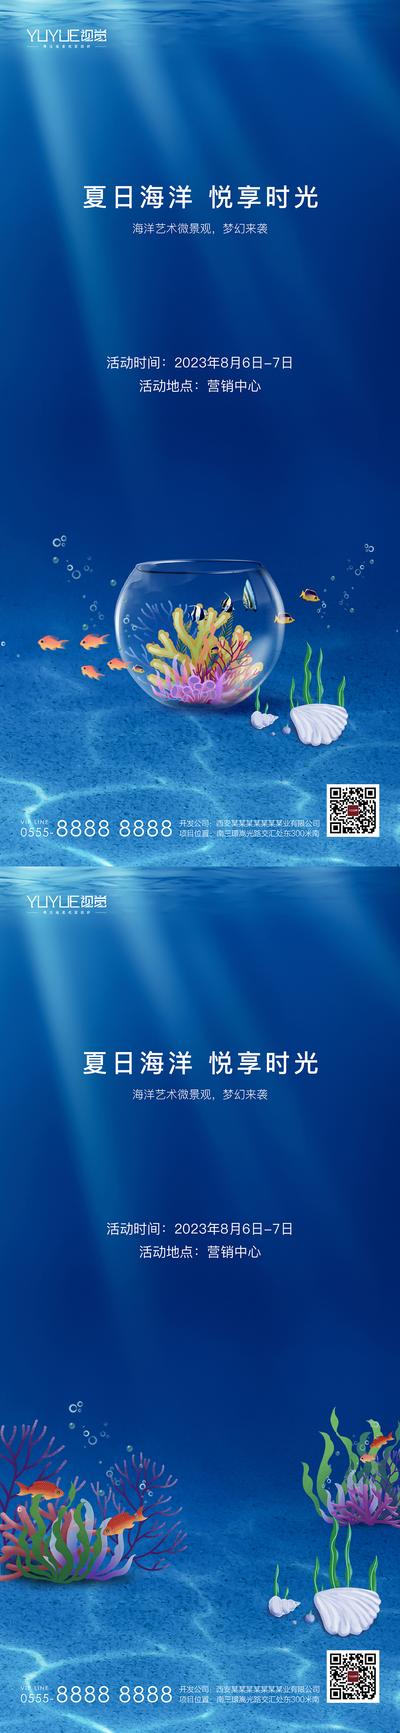 南门网 广告 地产 海底 海洋 活动 系列 房地产 暖场 海洋 微景观 夏天 鱼 艺术 梦幻 微景观